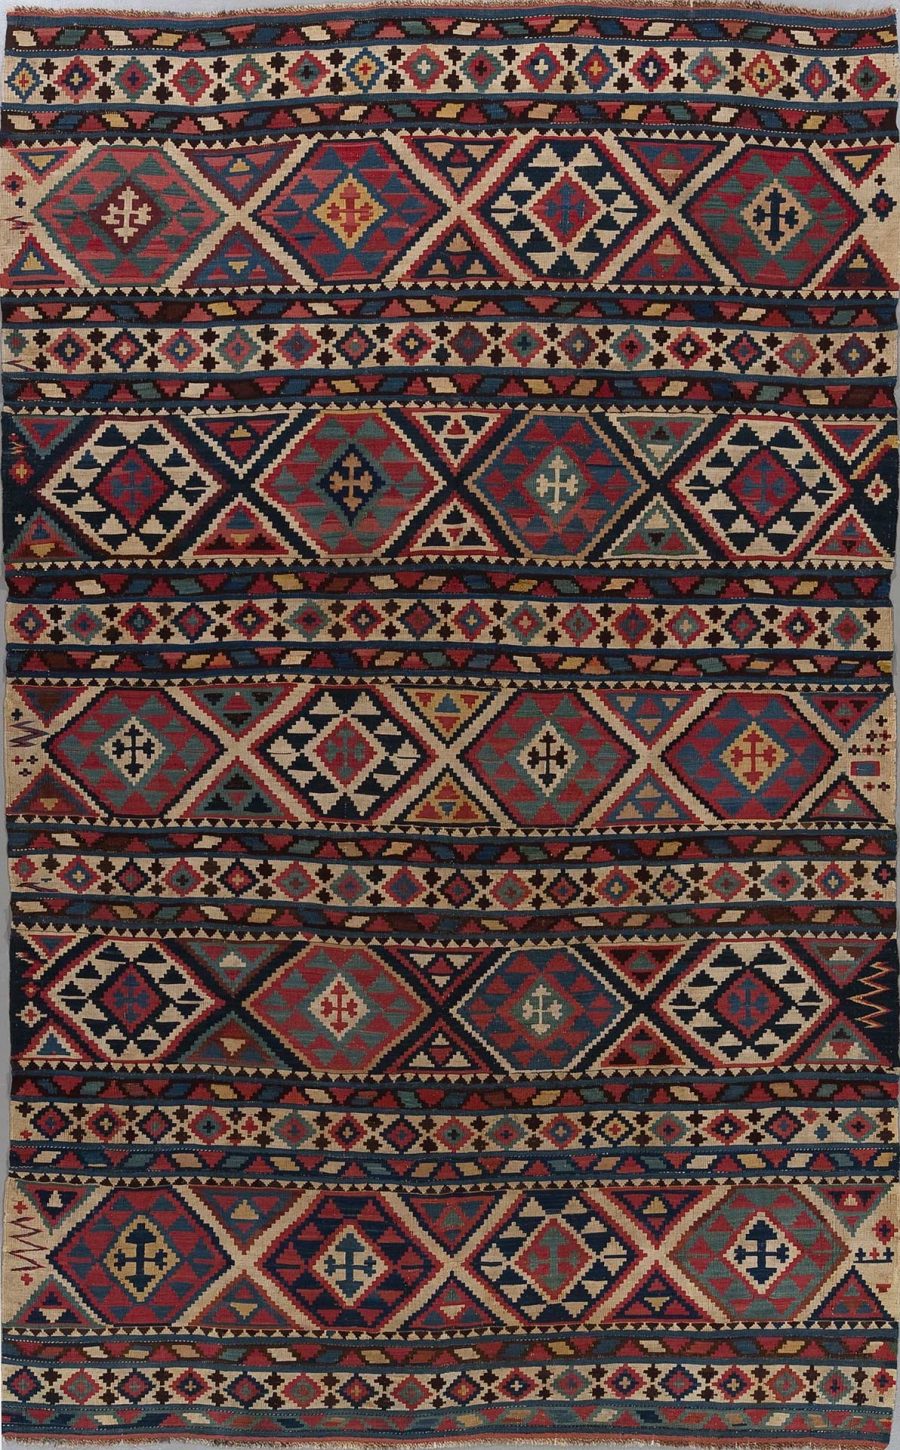 Traditioneller, handgewebter Teppich mit geometrischen Mustern und abstrakten Designs in einer Reihe von Farben, darunter Rot, Blau, Beige und Schwarz.